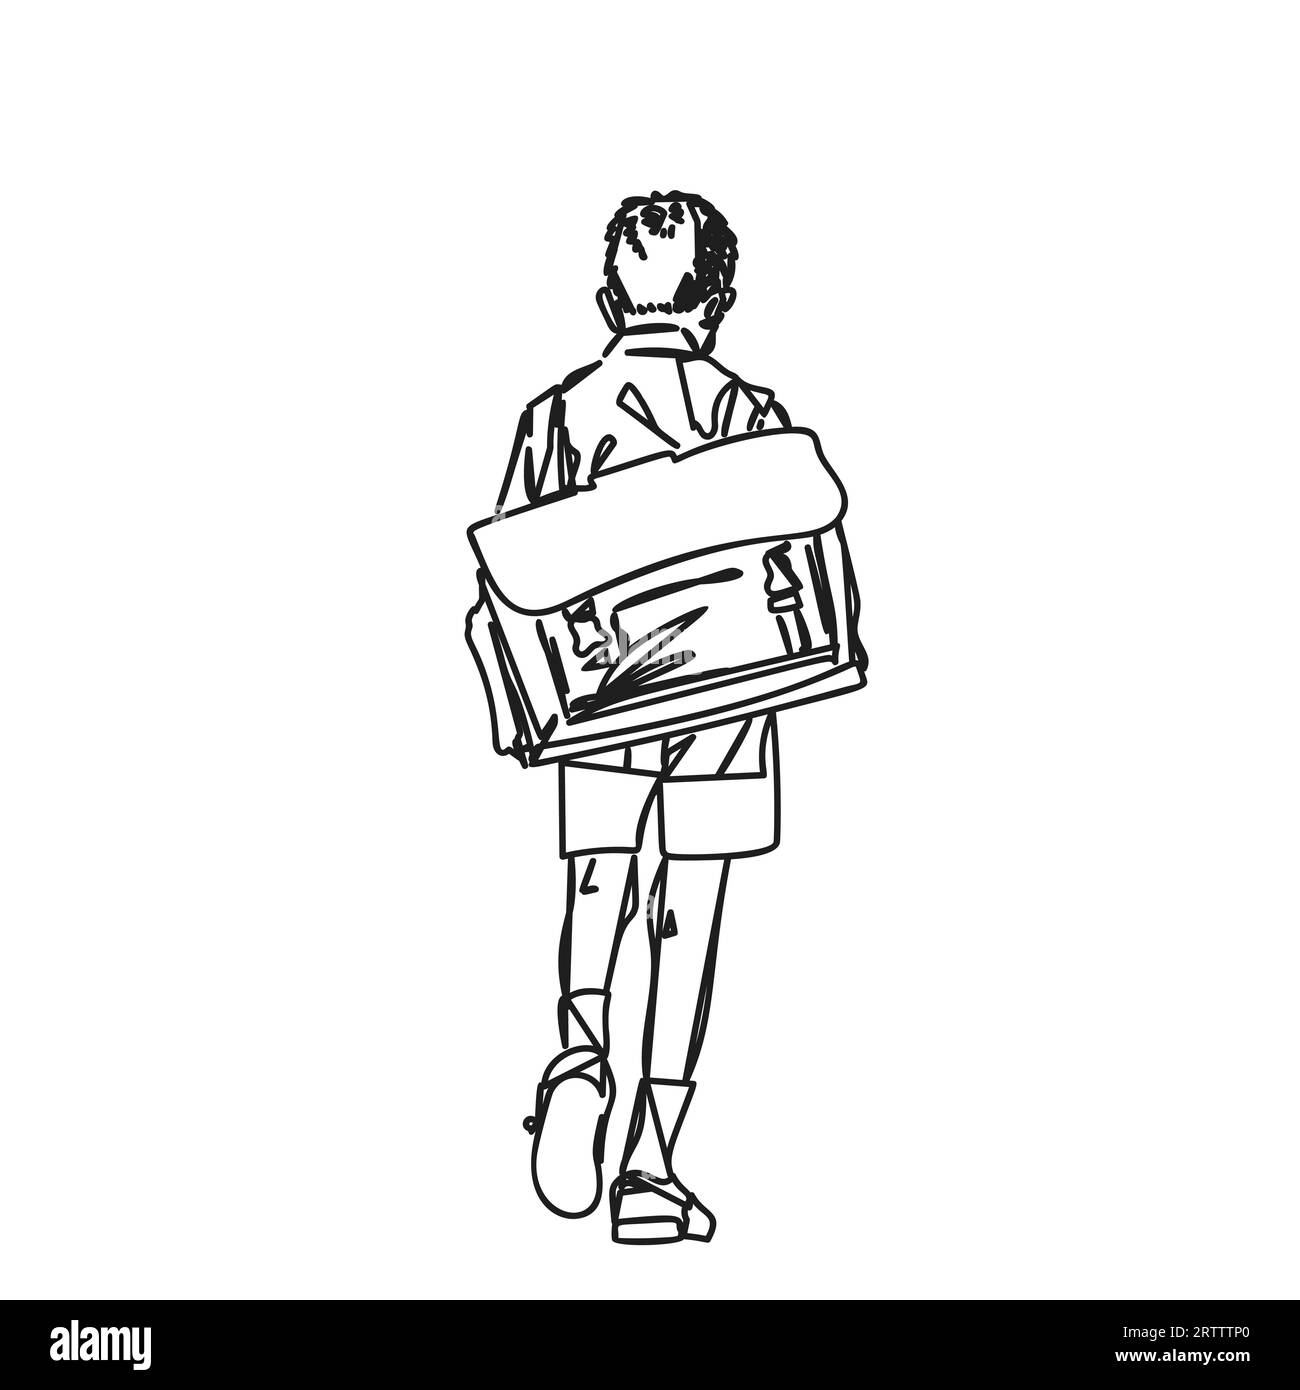 Écolier avec grand sac à dos rétro marchant loin avec sa tête vers le bas dessin vectoriel d'art de ligne abstraite, illustration dessinée à la main sur le garçon d'école de dos, Illustration de Vecteur